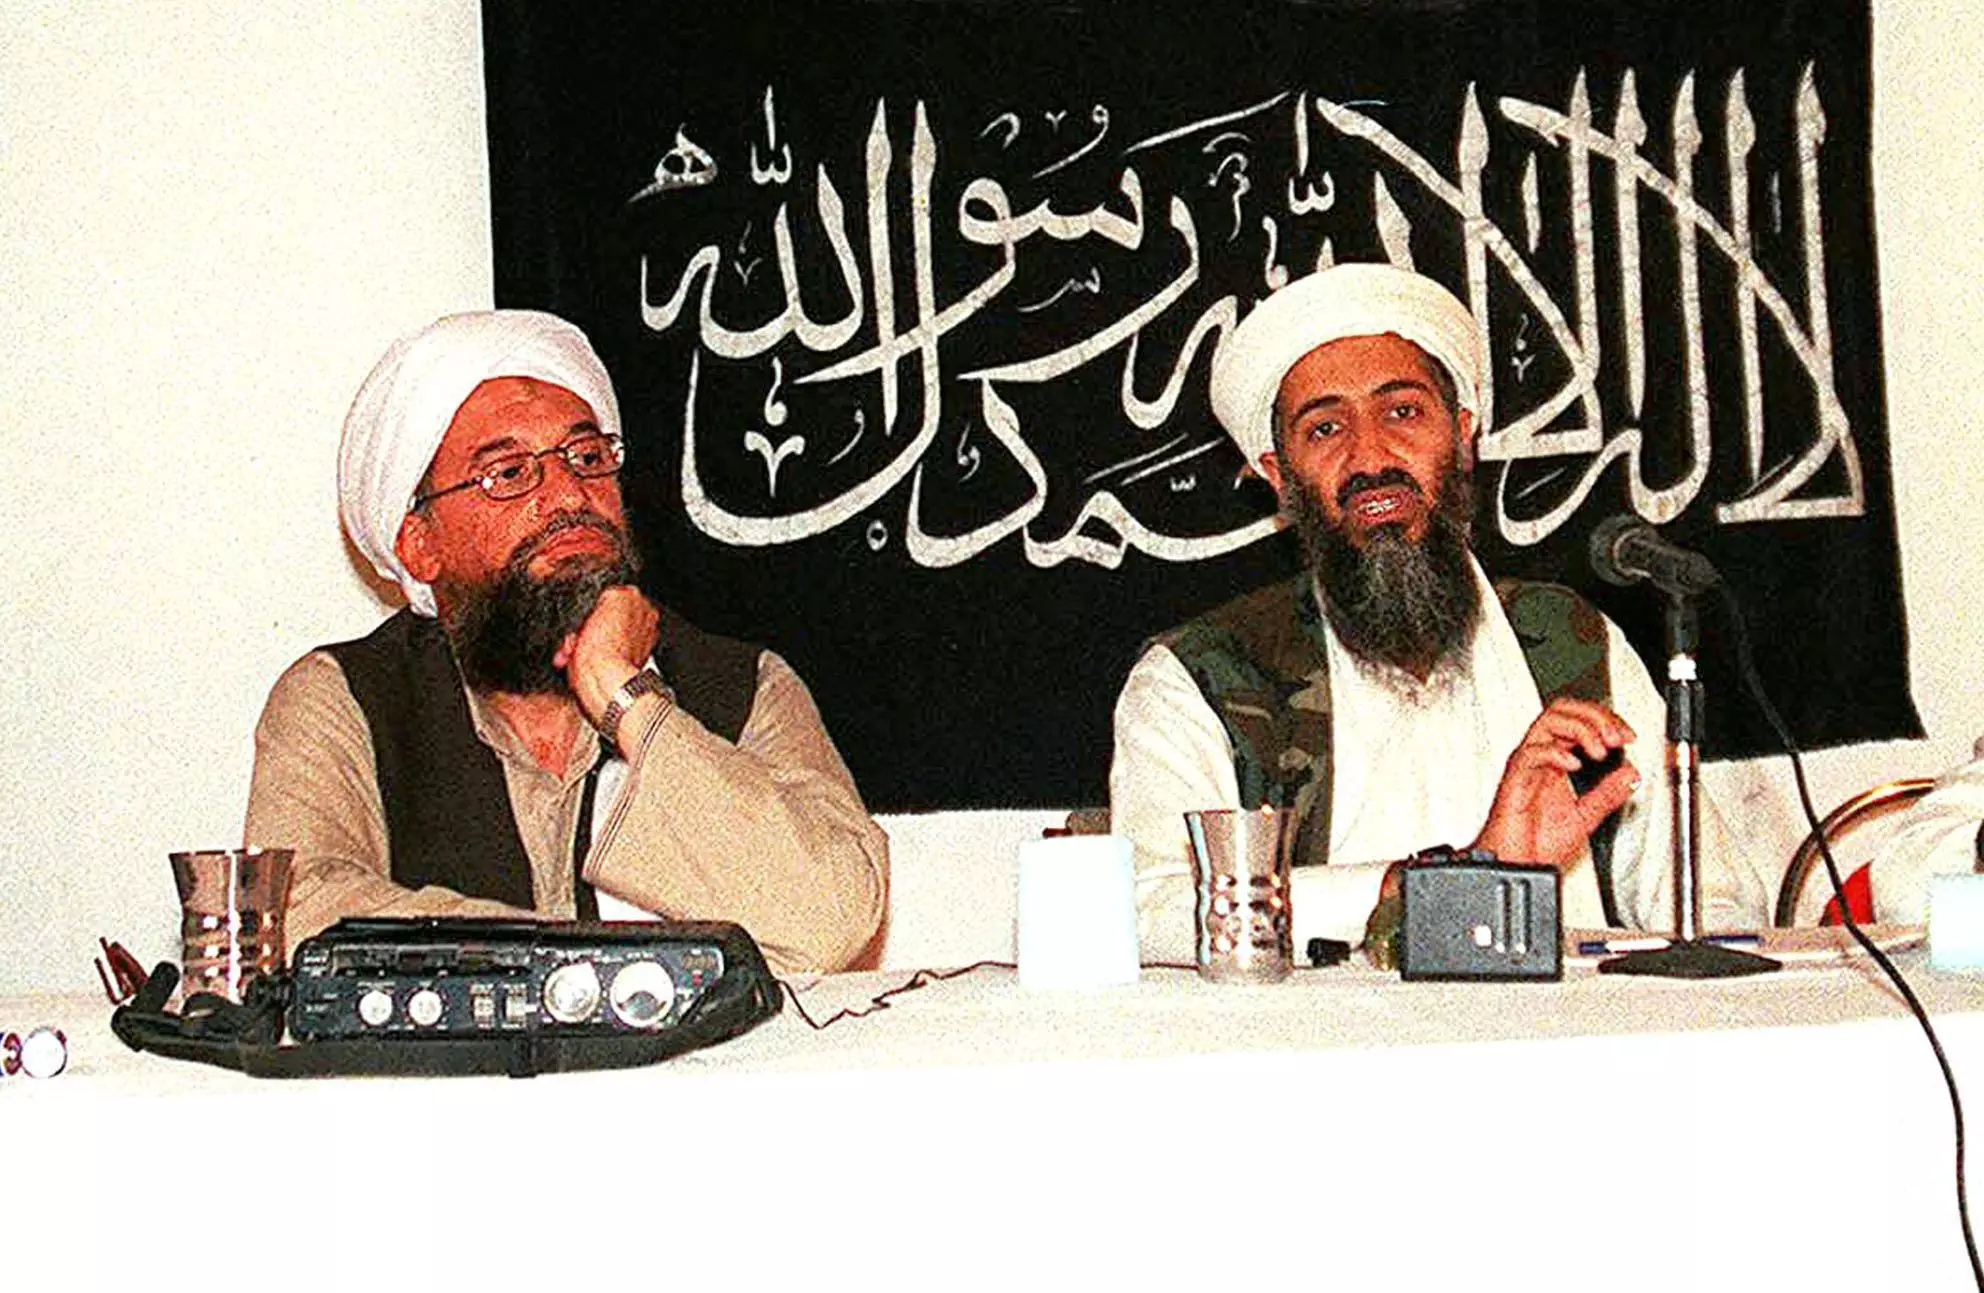 al-Zawahiri with Osama Bin Laden in 1998.